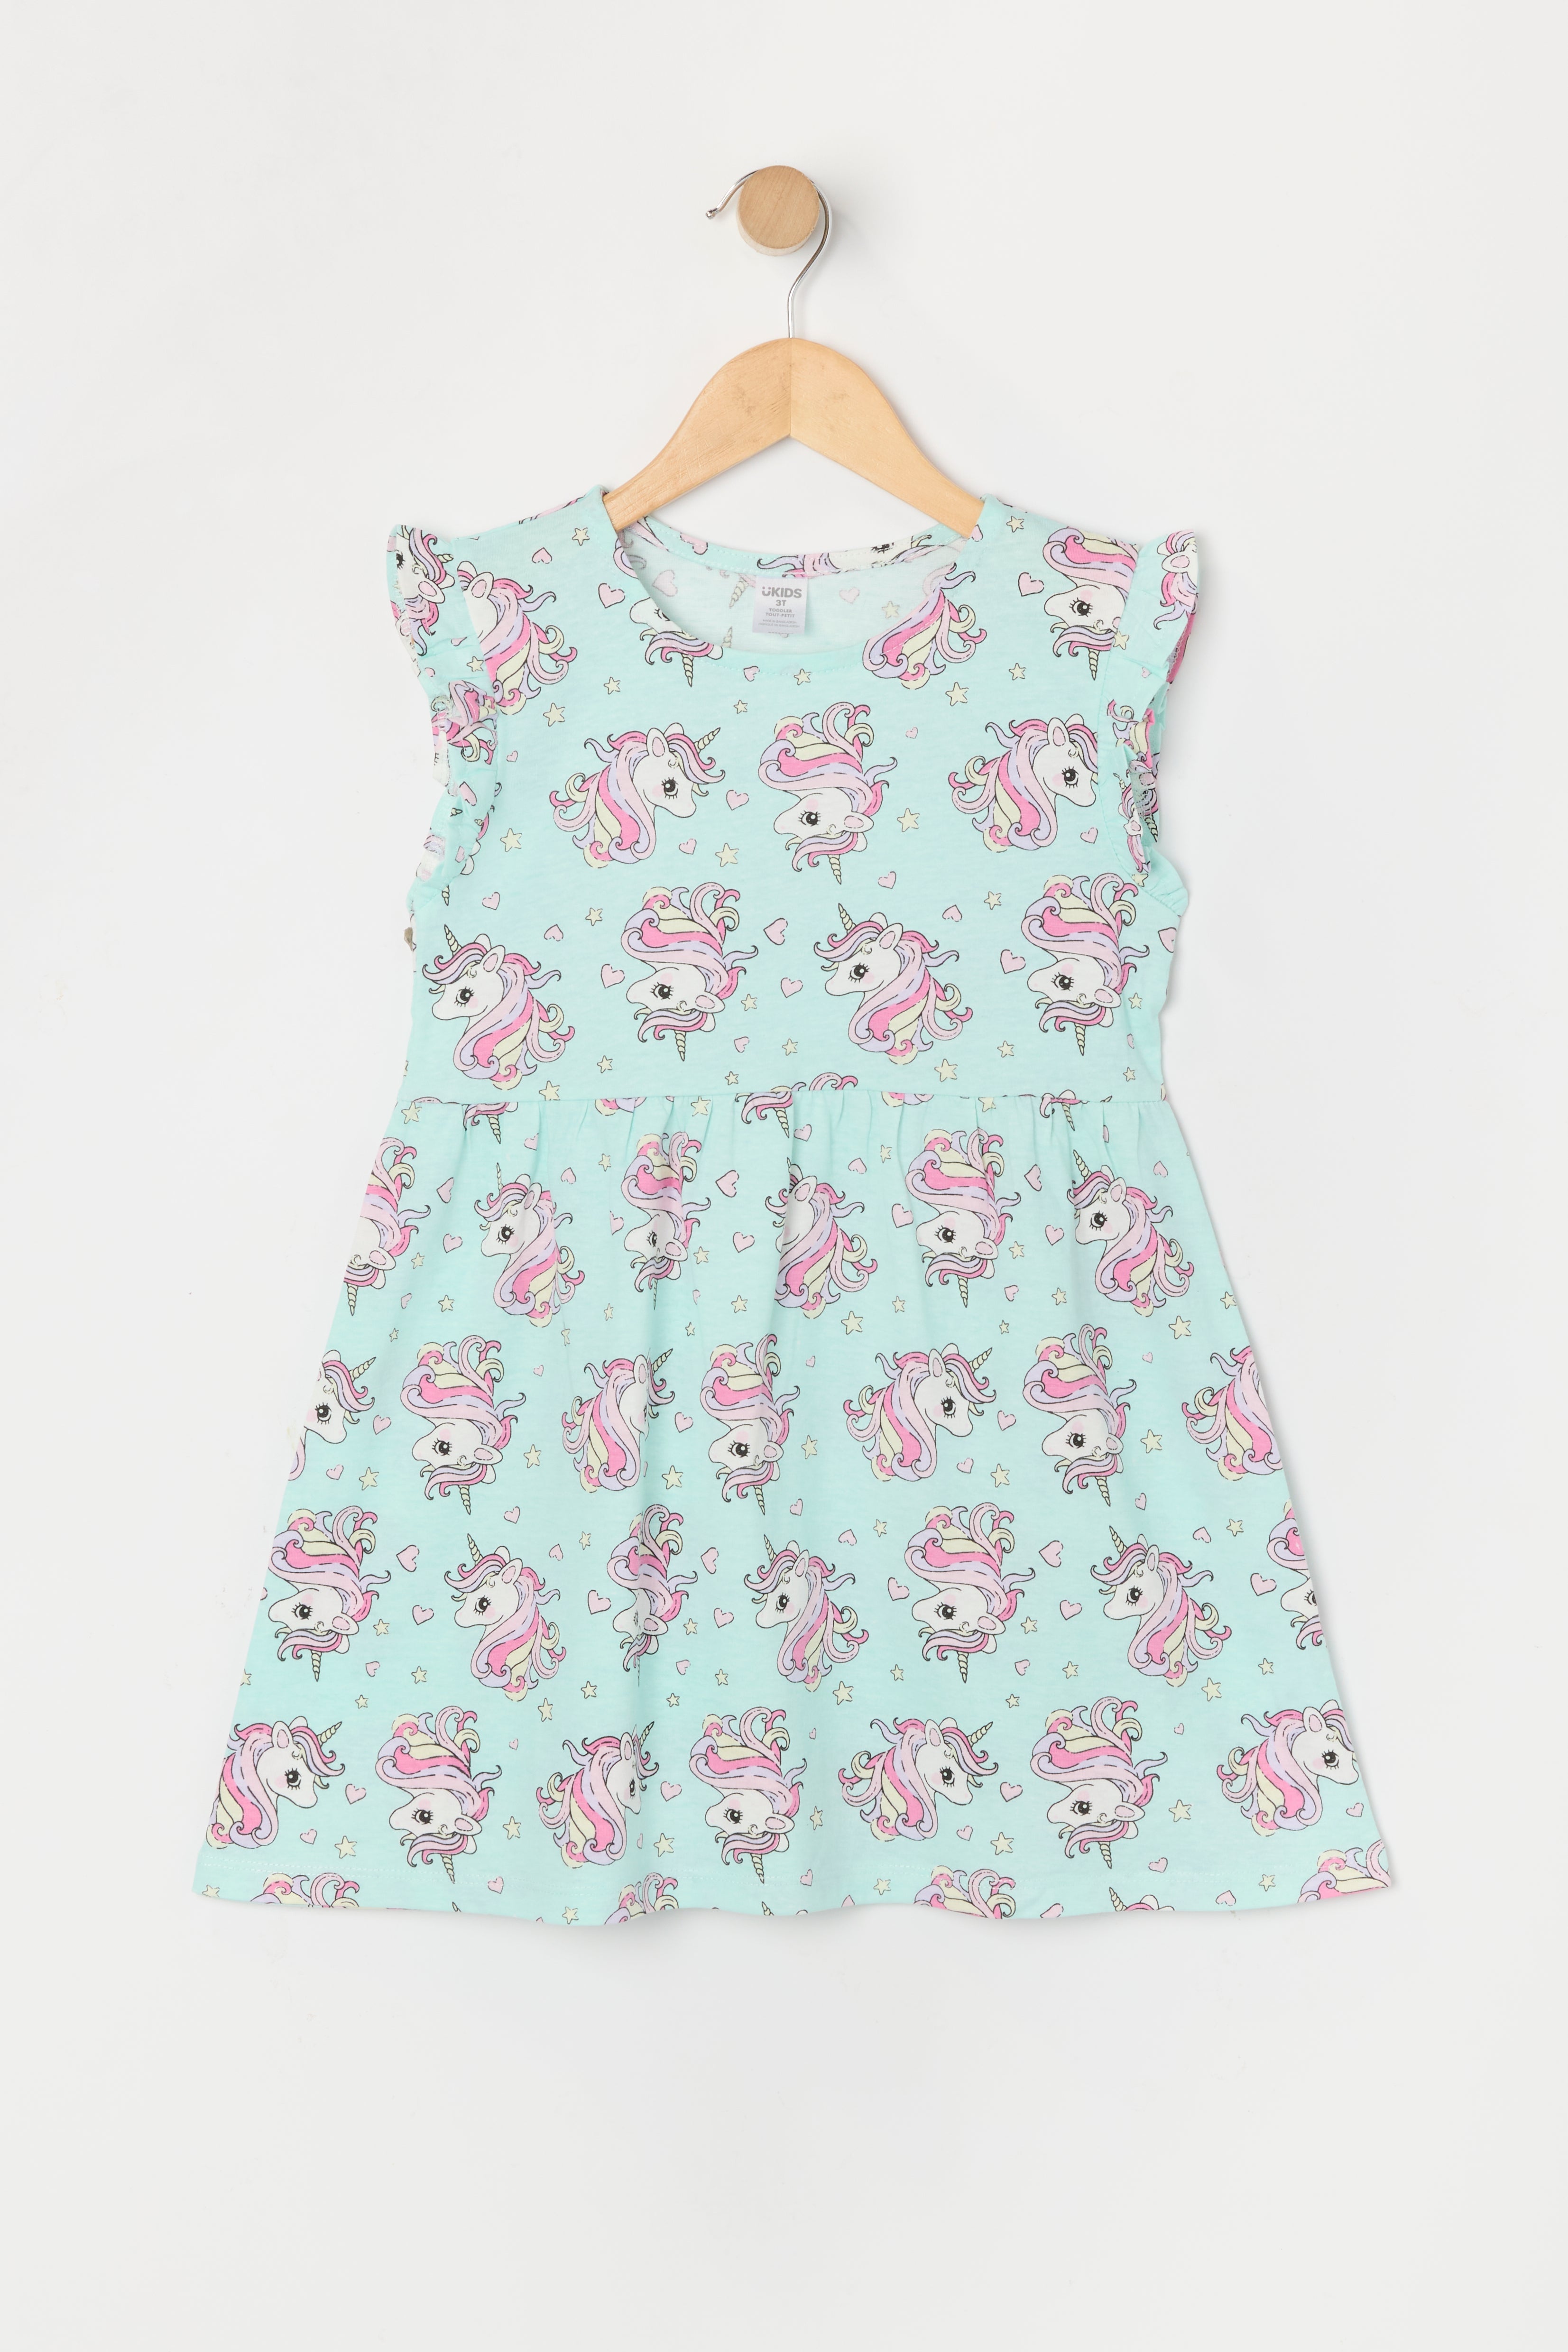 Toddler Girl Unicorn Print Flutter Sleeve Dress